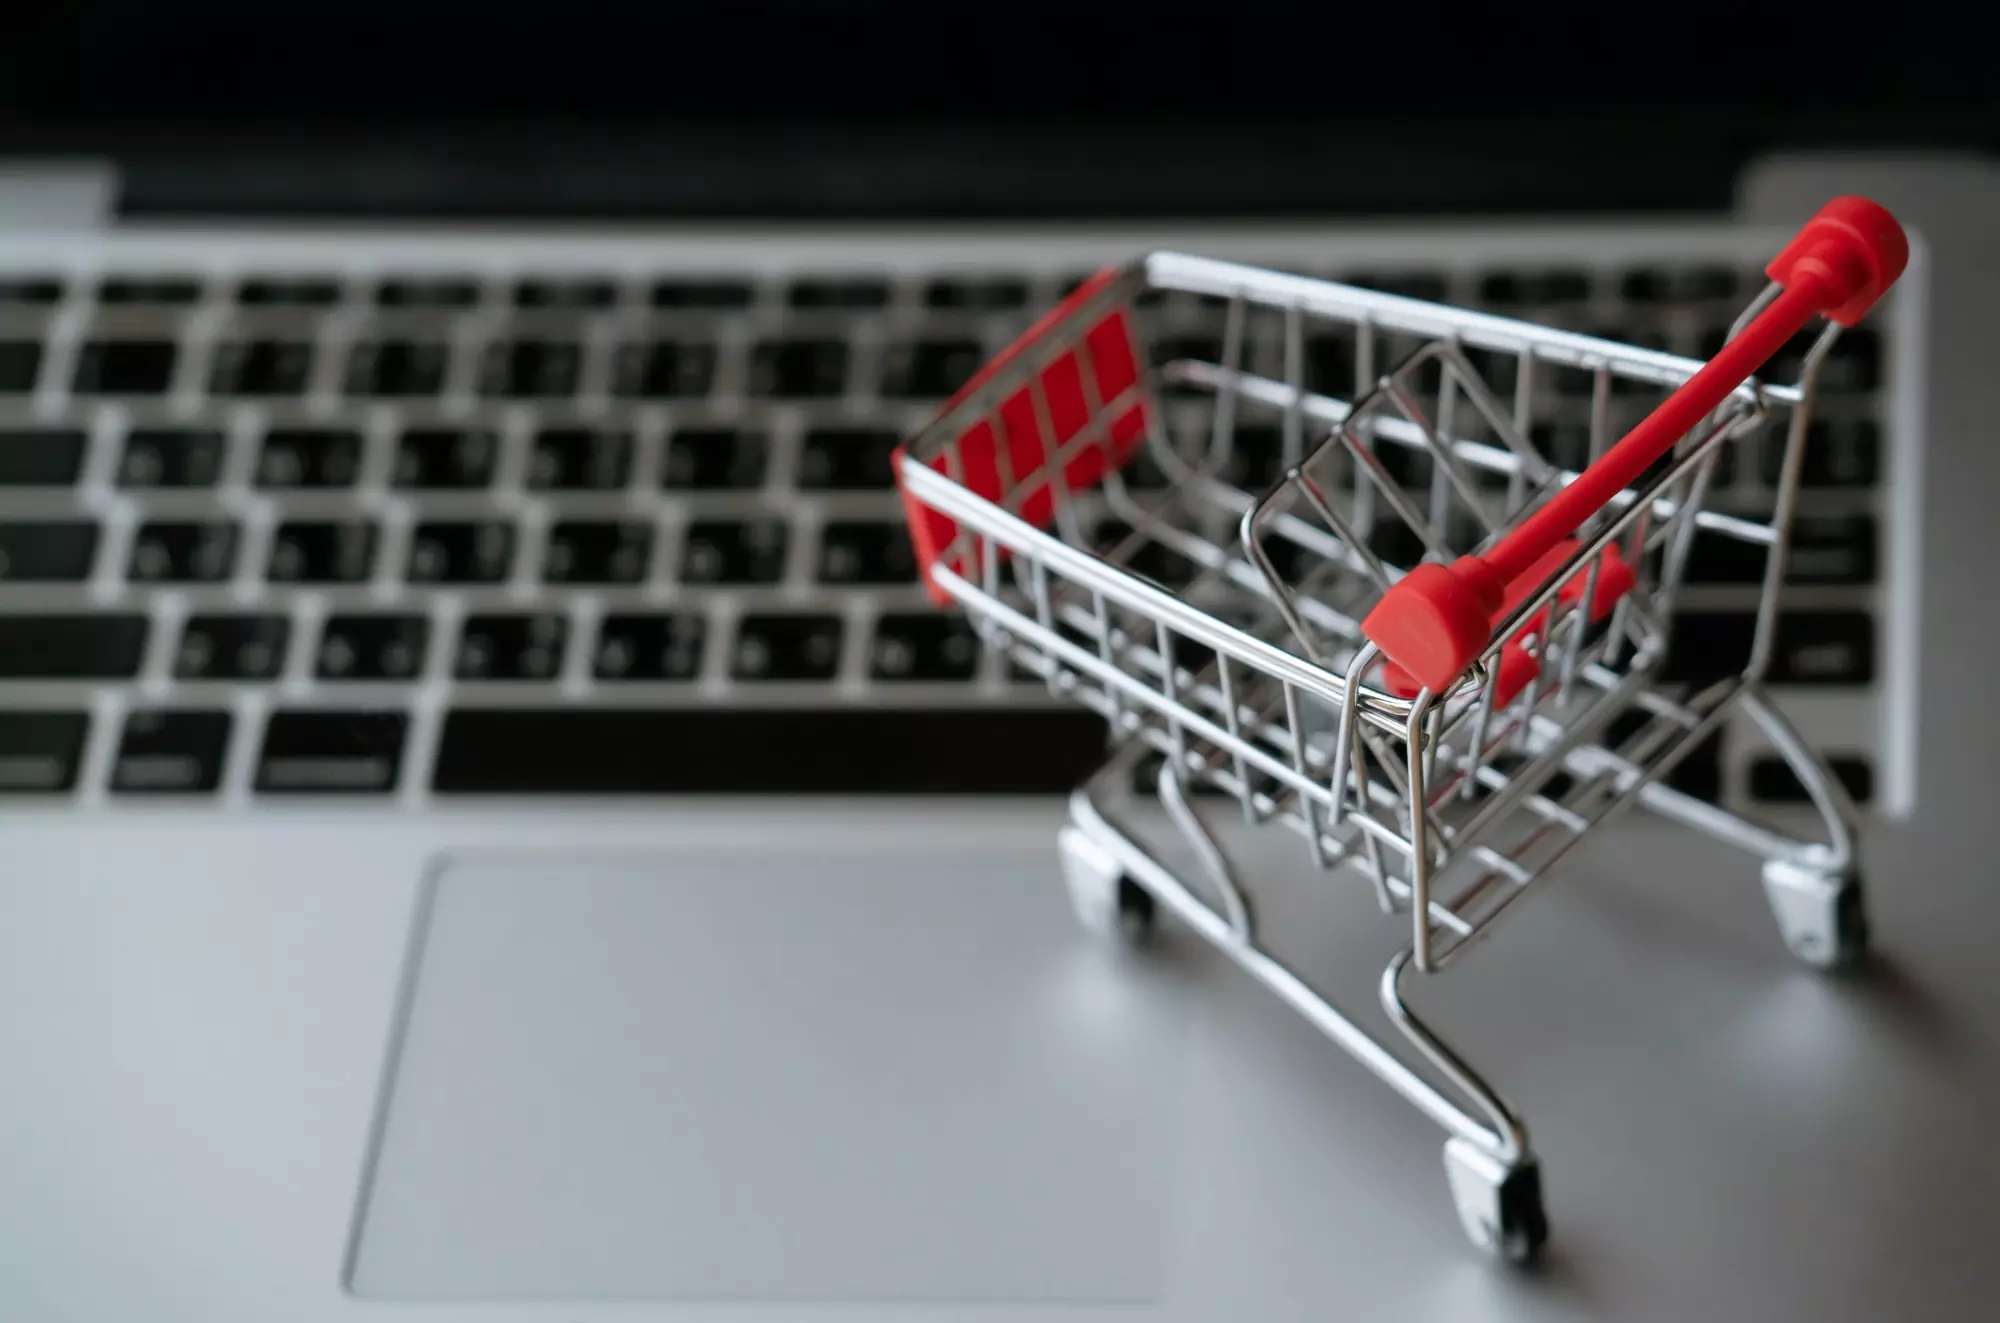 shopping cart on laptop